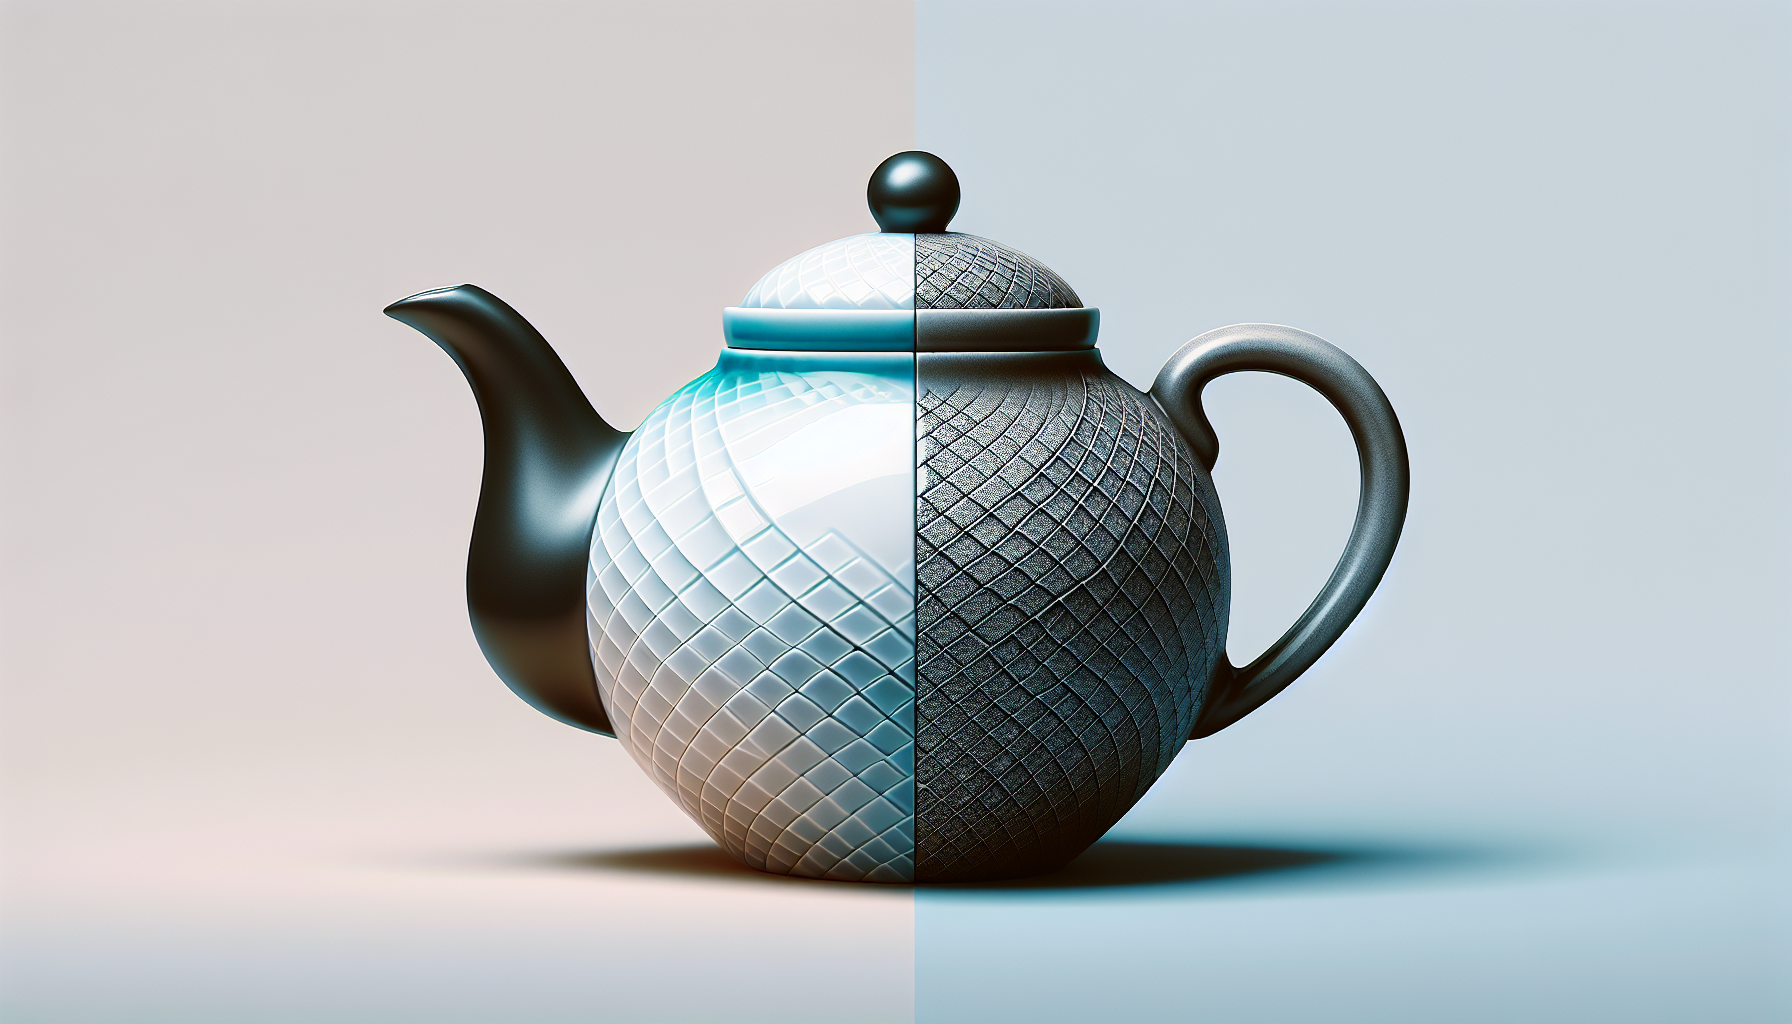 Is Porcelain Or Ceramic Better For Teapot?